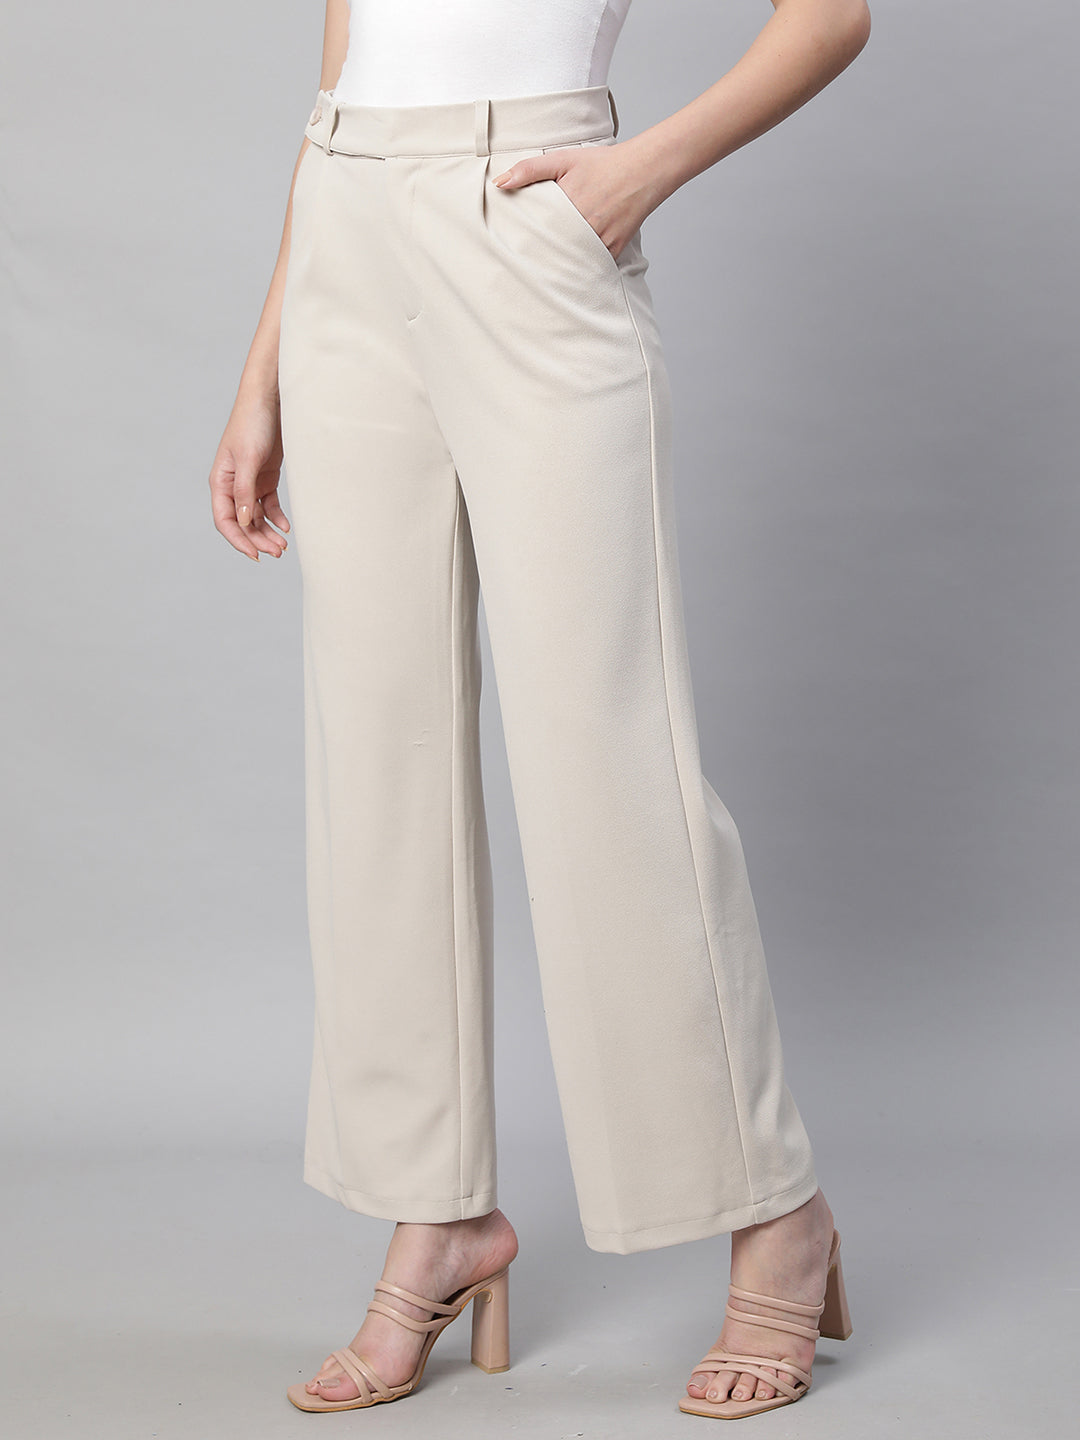 Buy Men Beige Solid Slim Fit Formal Trousers Online  586886  Peter England